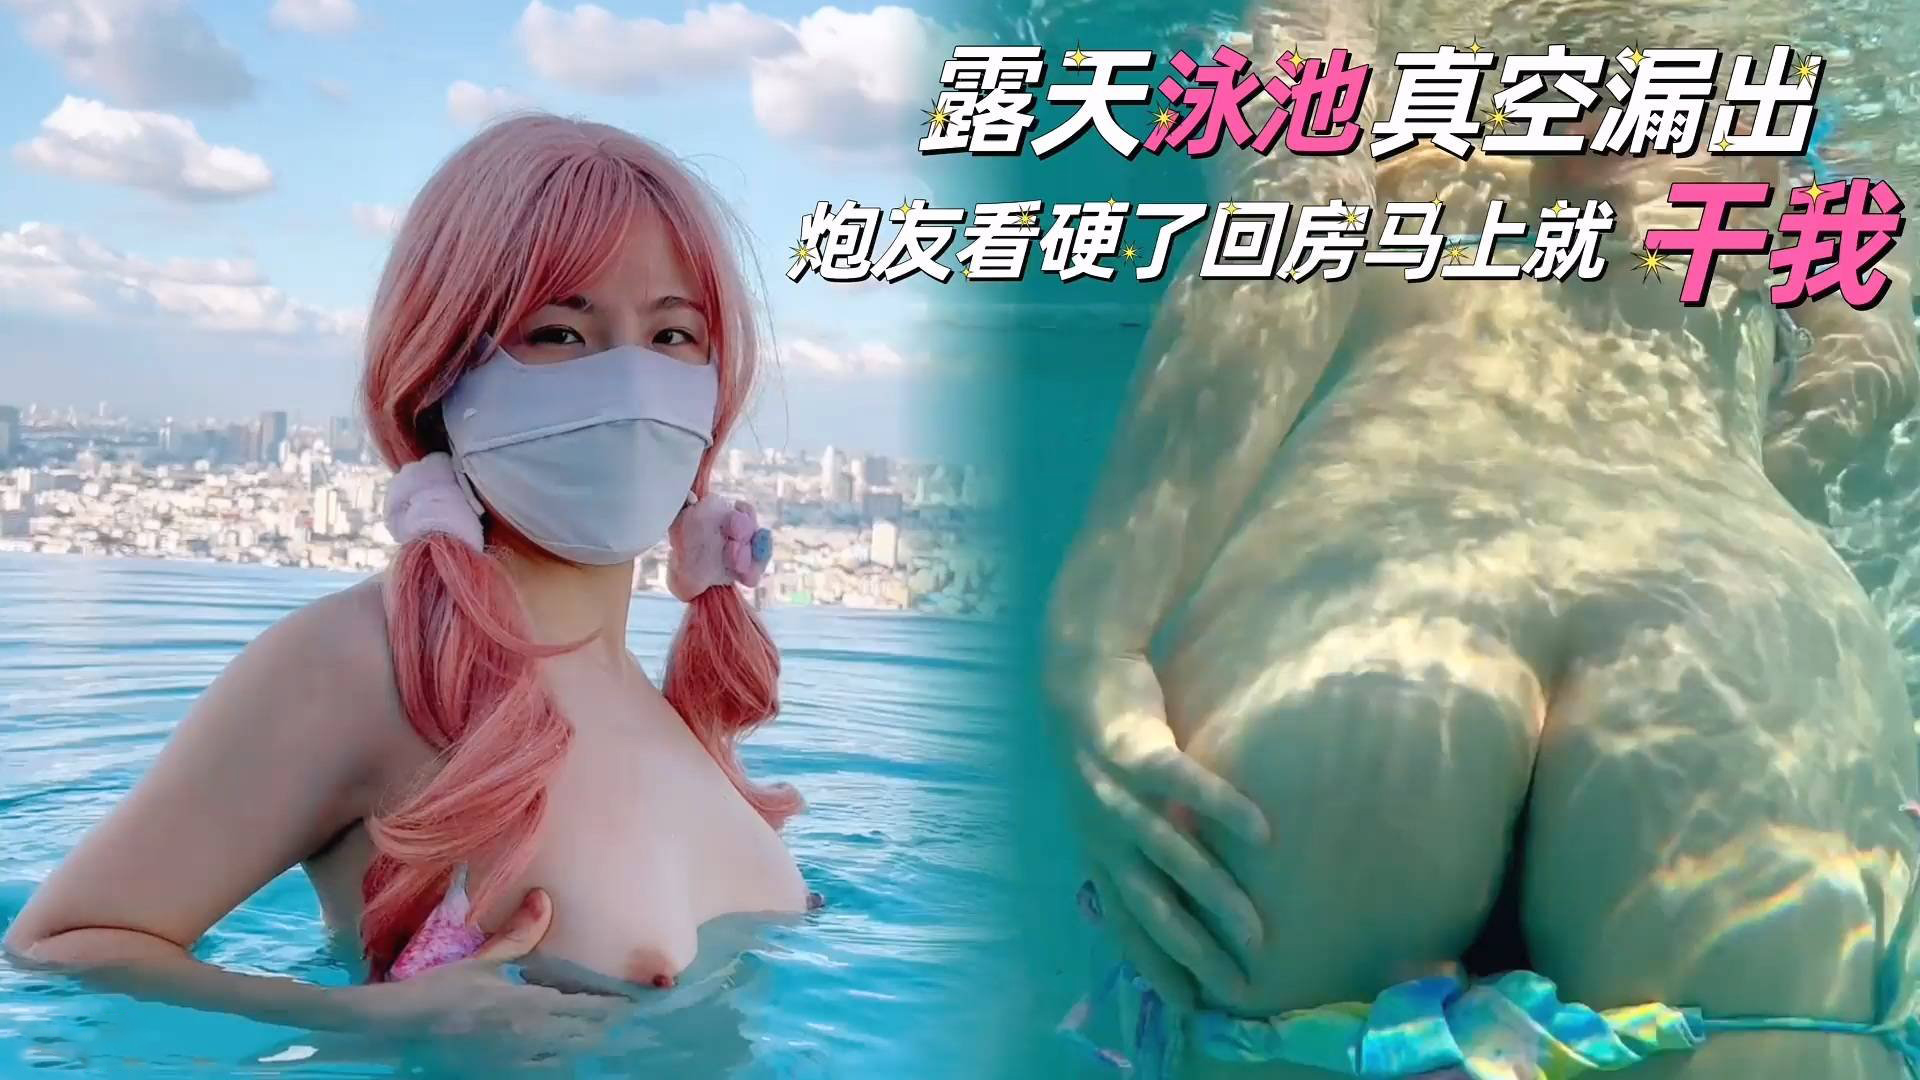 [Phụ đề tiếng Trung] Giải thích cốt truyện của phim khiêu dâm trên Internet "Cherrycat1108" [Phần 9] Máy hút bụi trong bể bơi lộ thiên, bạn tình của tôi hứng tình đến mức quay trở lại phòng và đụ tôi